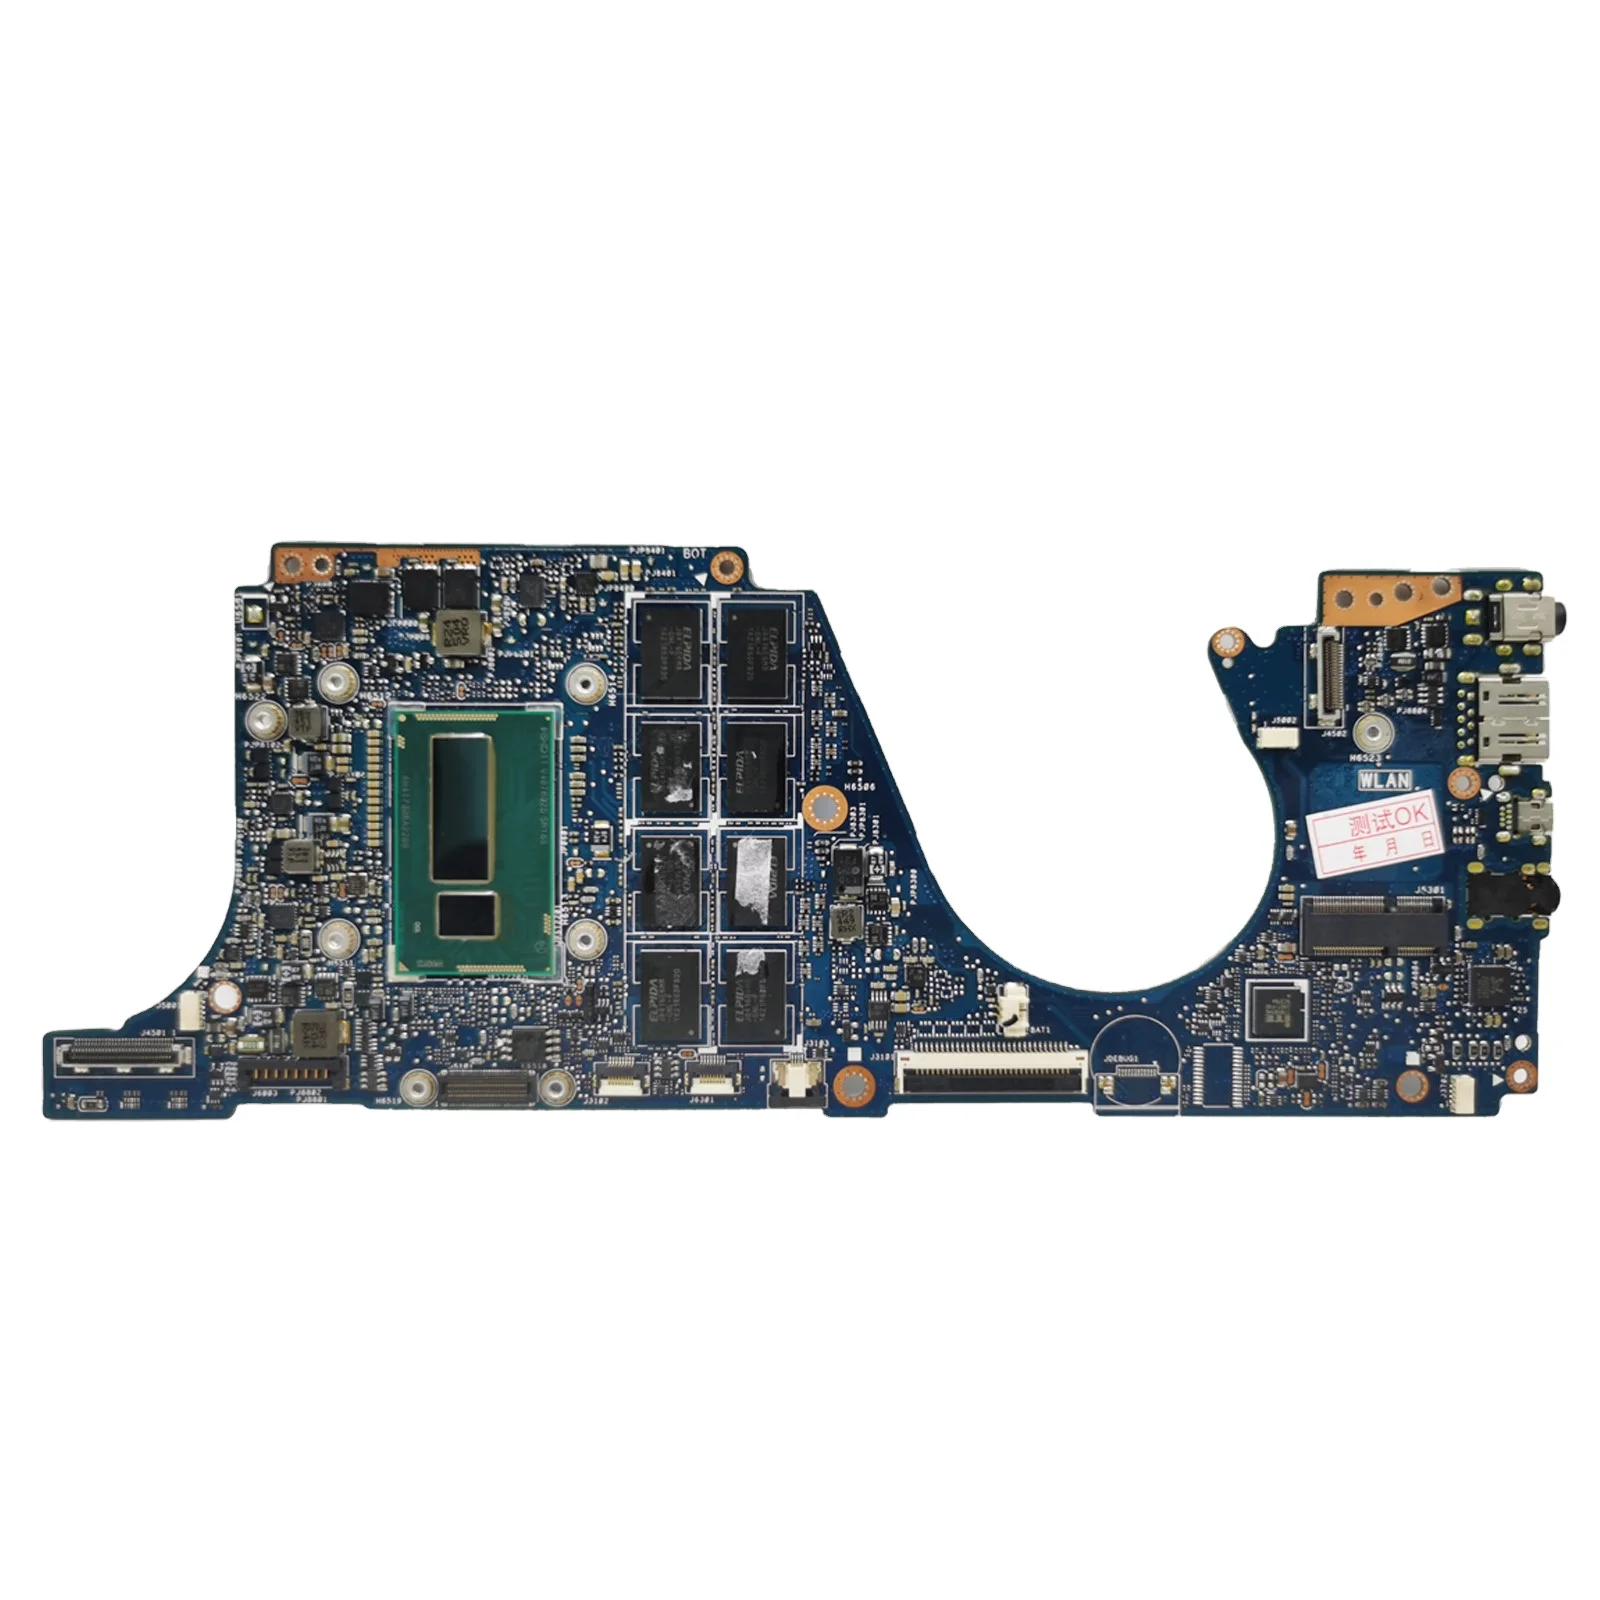 

UX301 Notebook Mainboard For ASUS ZENBOOK UX301L UX301LA Laptop Motherboard I3 I5 I7 8GB/RAM UMA Main Board